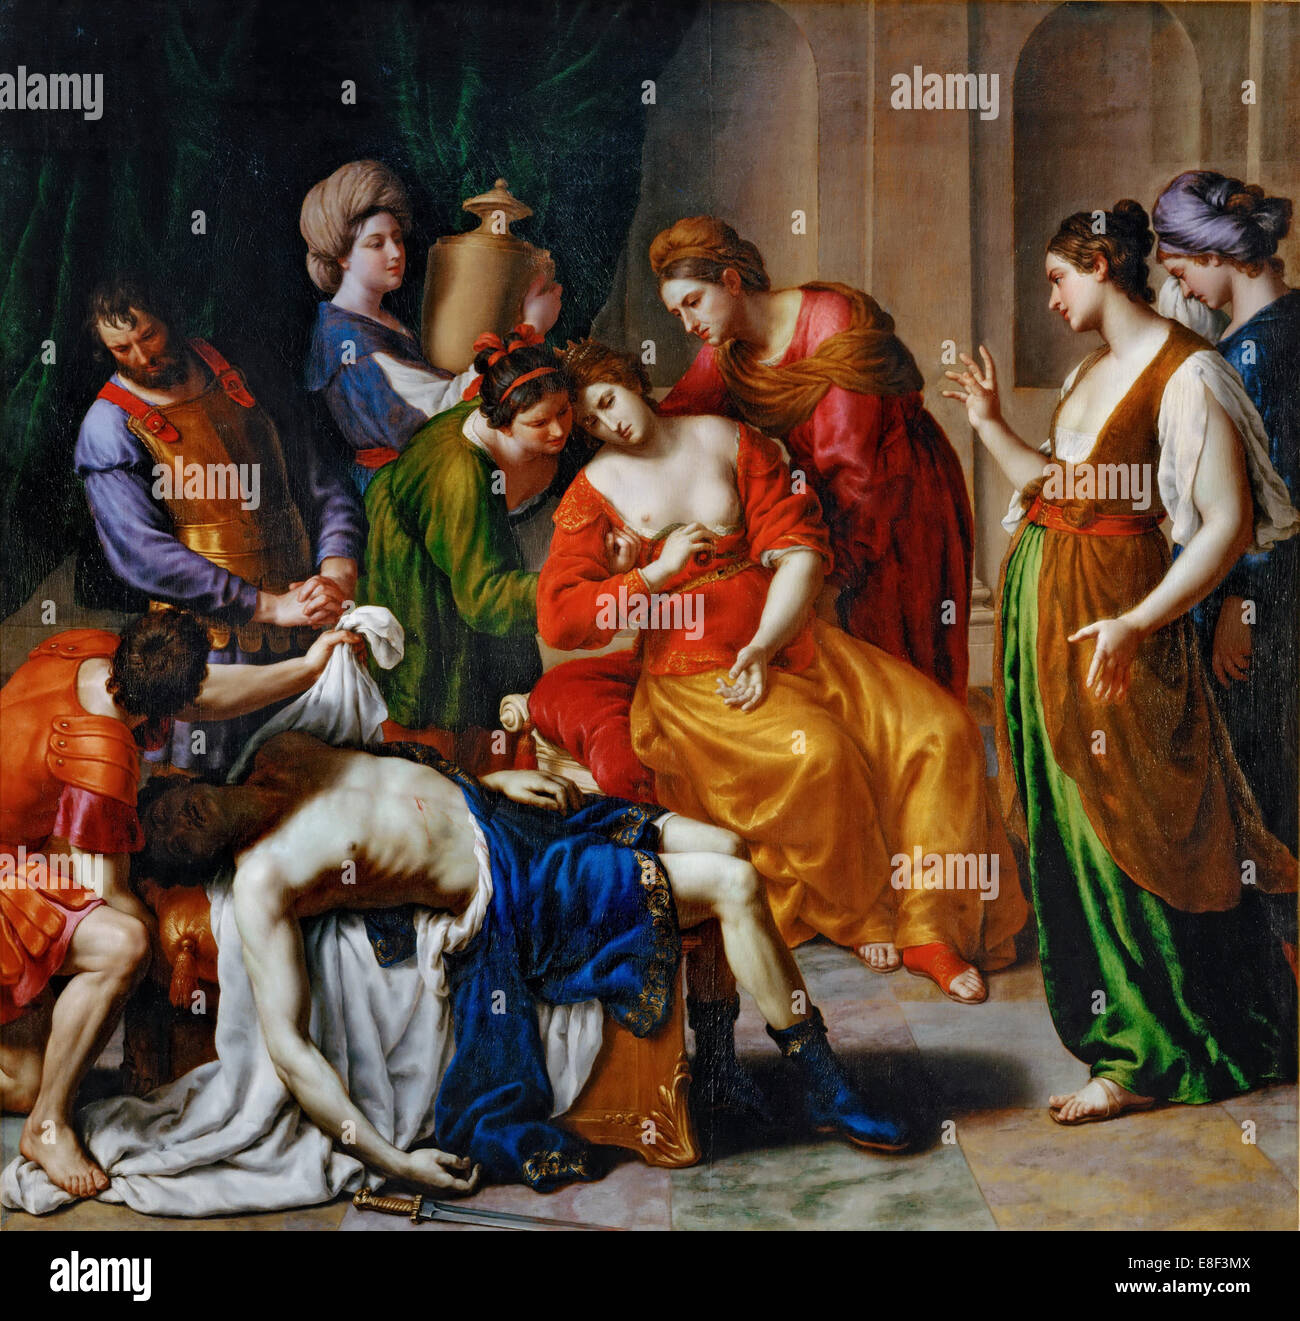 The Death of Cleopatra. Artist: Turchi, Alessandro (1578-1649) Stock Photo